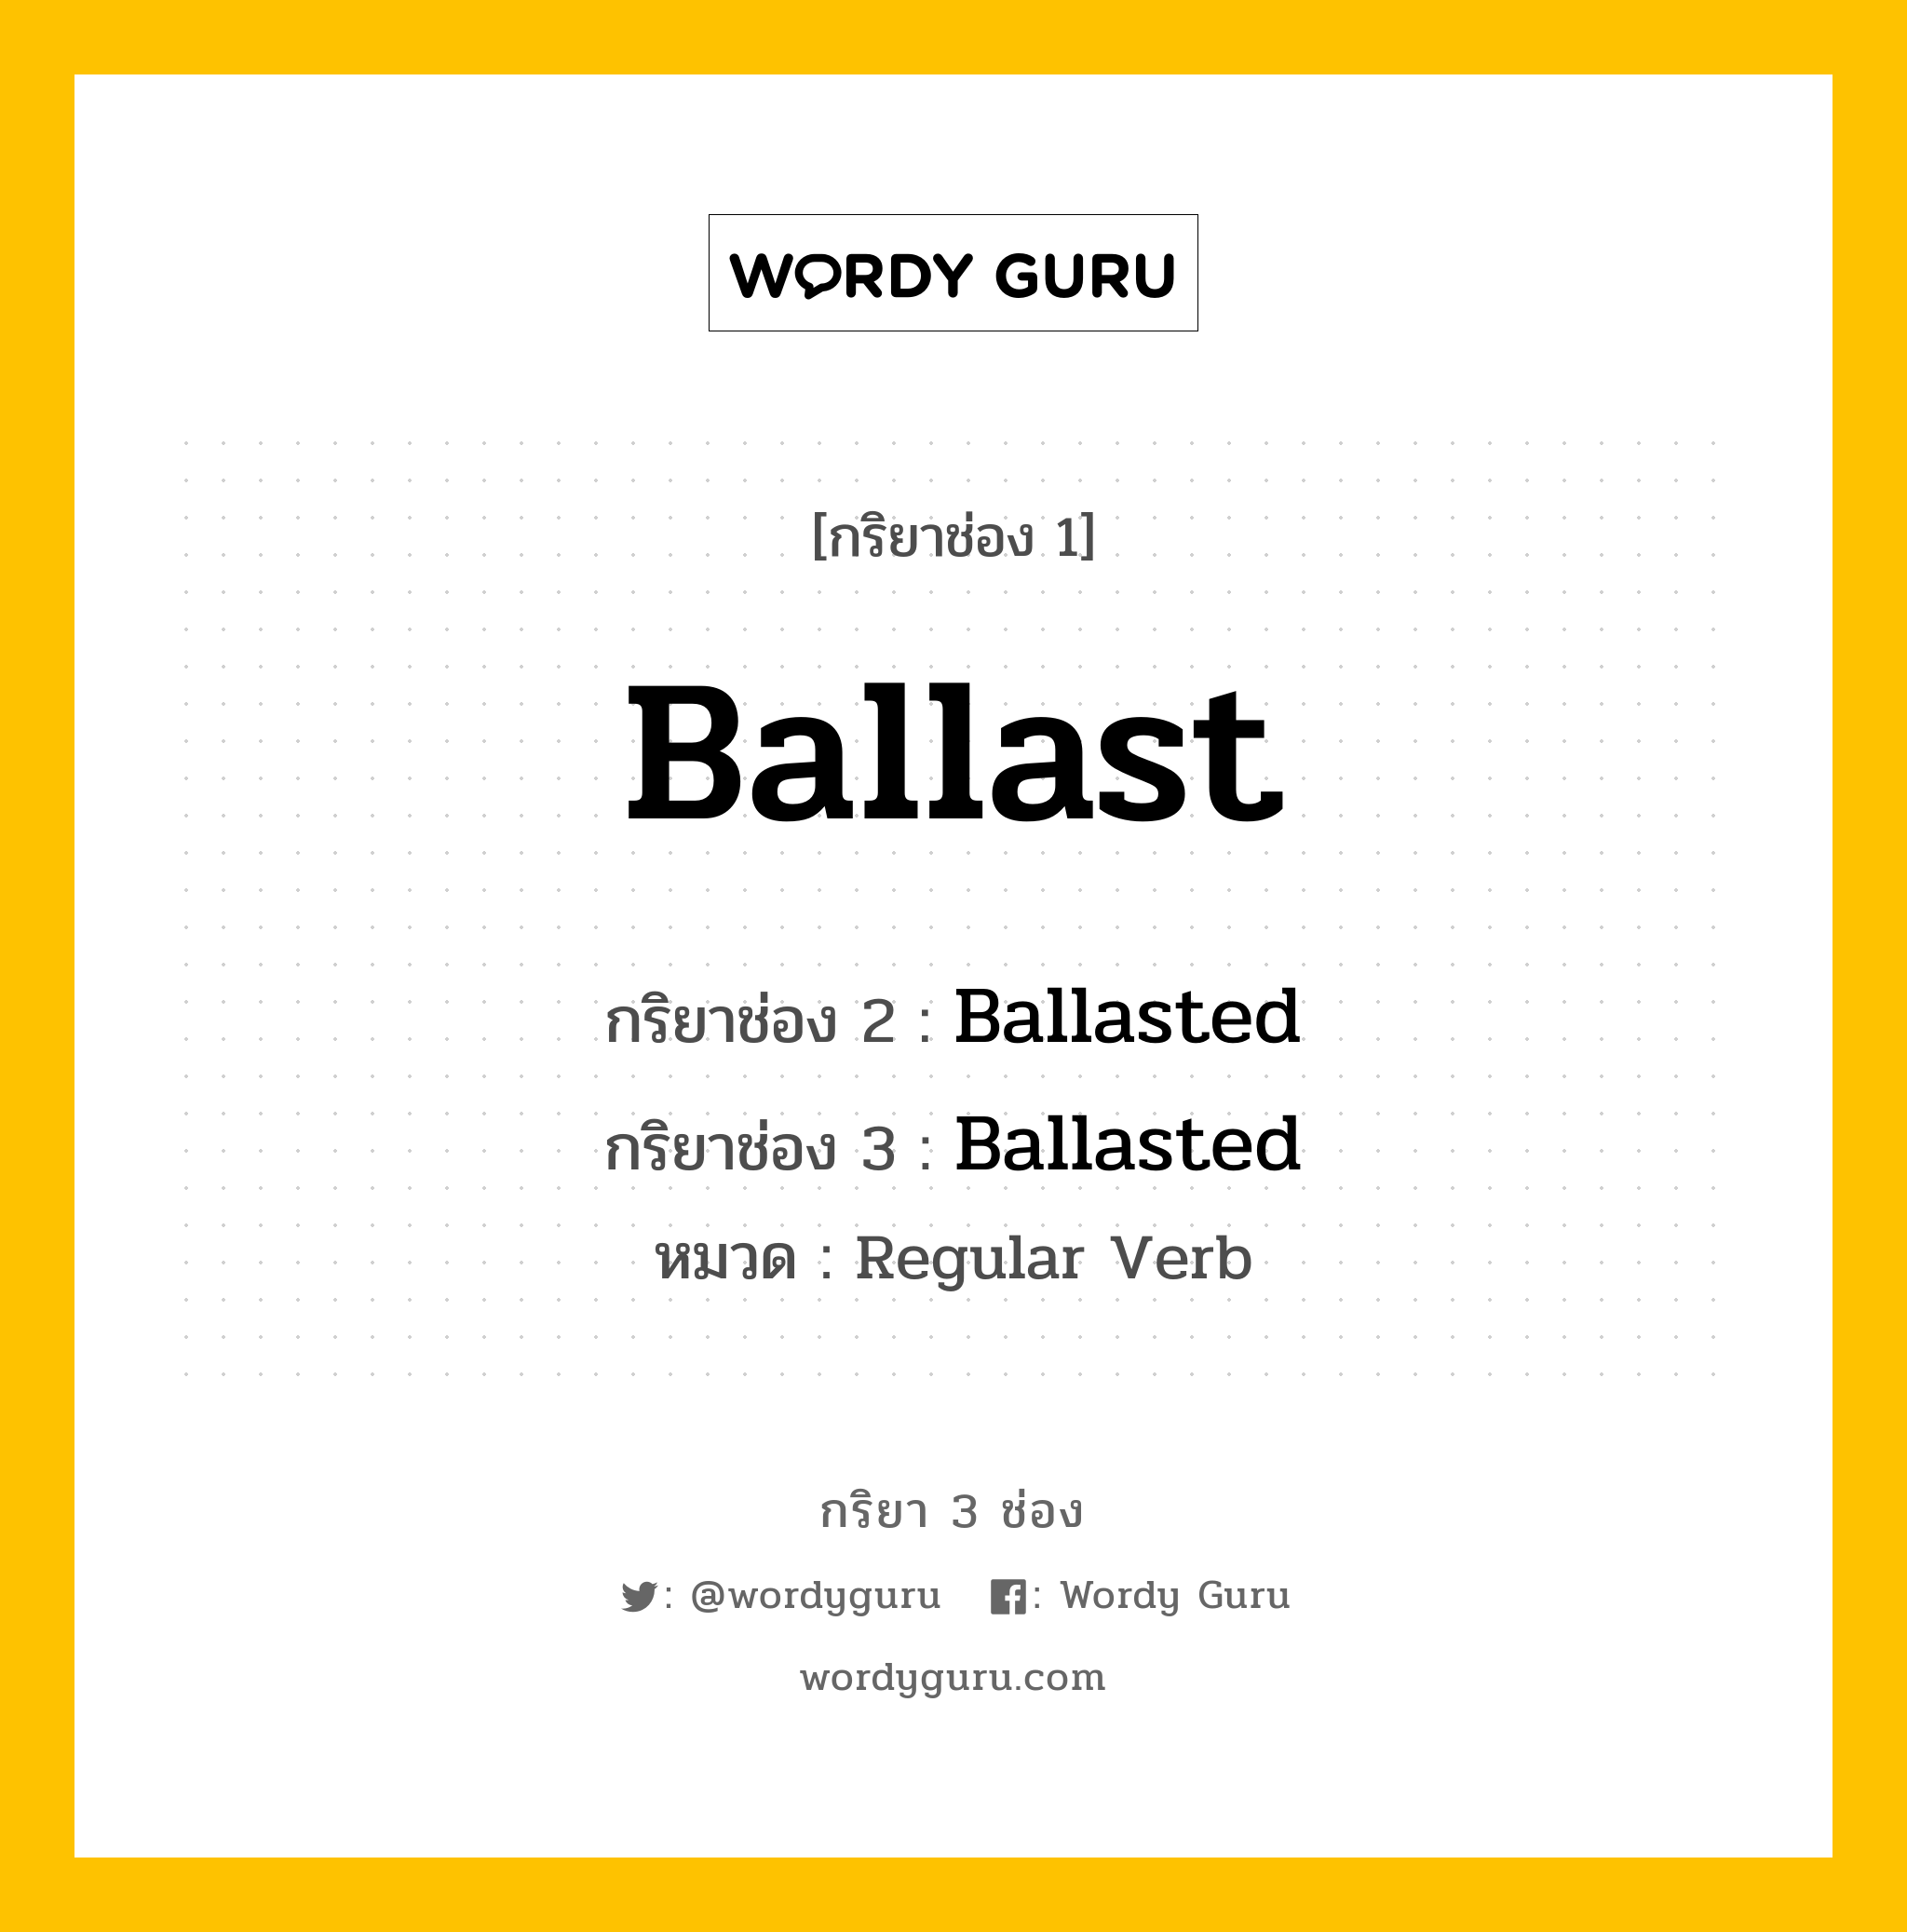 กริยา 3 ช่อง: Ballast ช่อง 2 Ballast ช่อง 3 คืออะไร, กริยาช่อง 1 Ballast กริยาช่อง 2 Ballasted กริยาช่อง 3 Ballasted หมวด Regular Verb หมวด Regular Verb